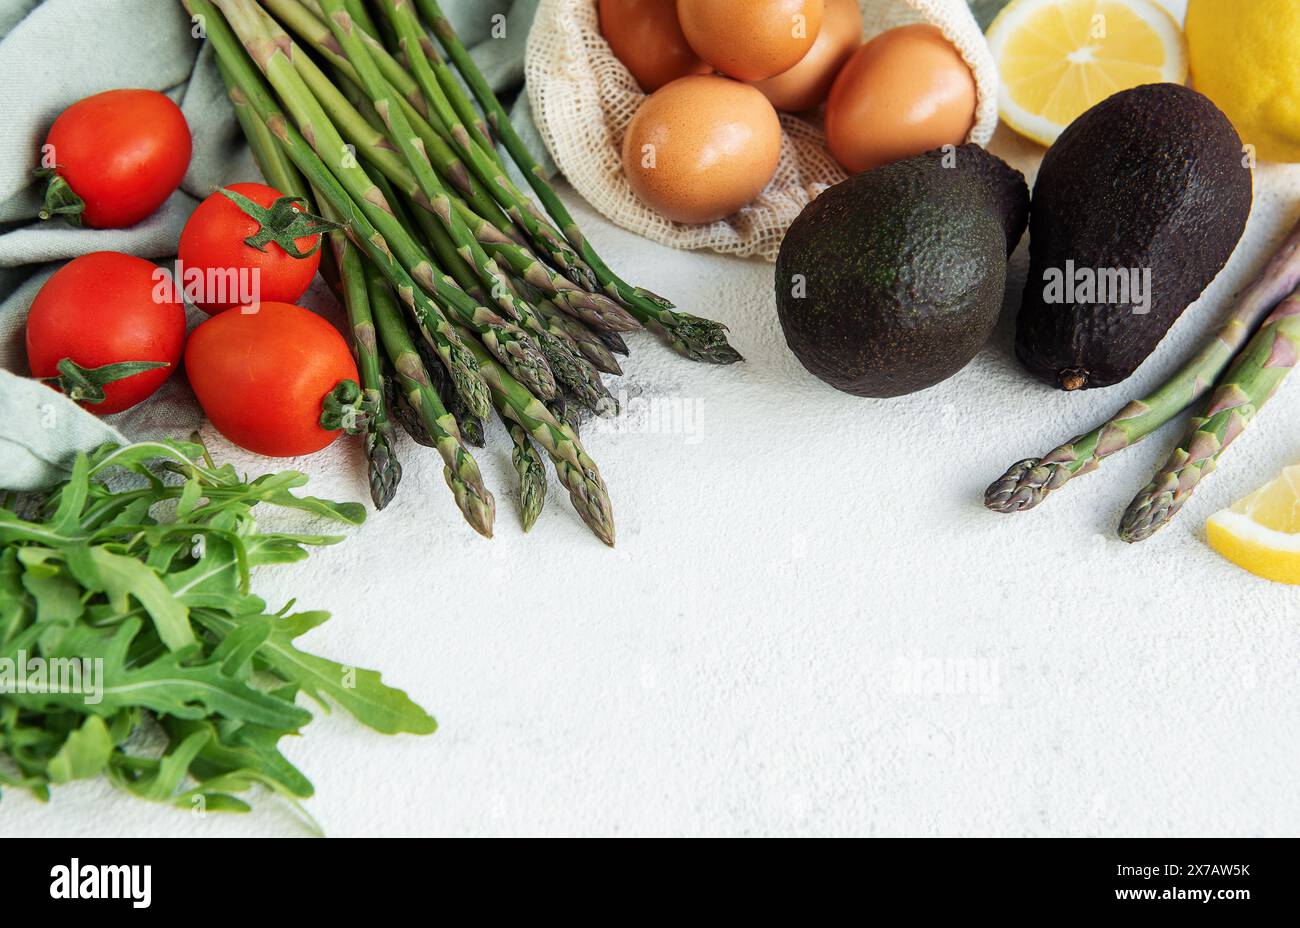 Una varietà di verdure fresche, tra cui asparagi, pomodori e rucola, sono ordinatamente organizzati accanto a avocado maturi e un sacchetto di uova scure. L'arr Foto Stock